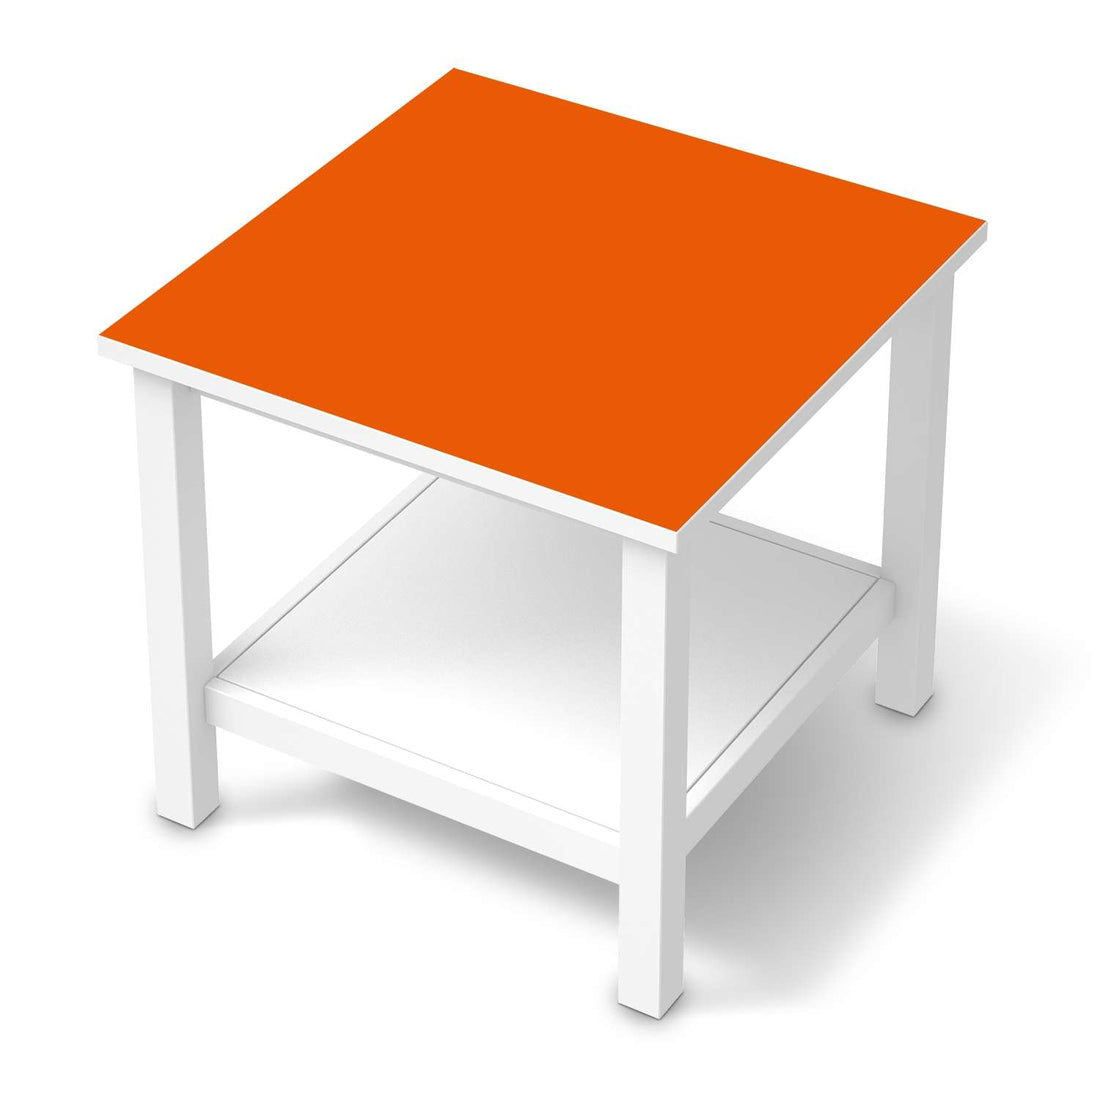 Möbel Klebefolie Orange Dark - IKEA Hemnes Beistelltisch 55x55 cm  - weiss